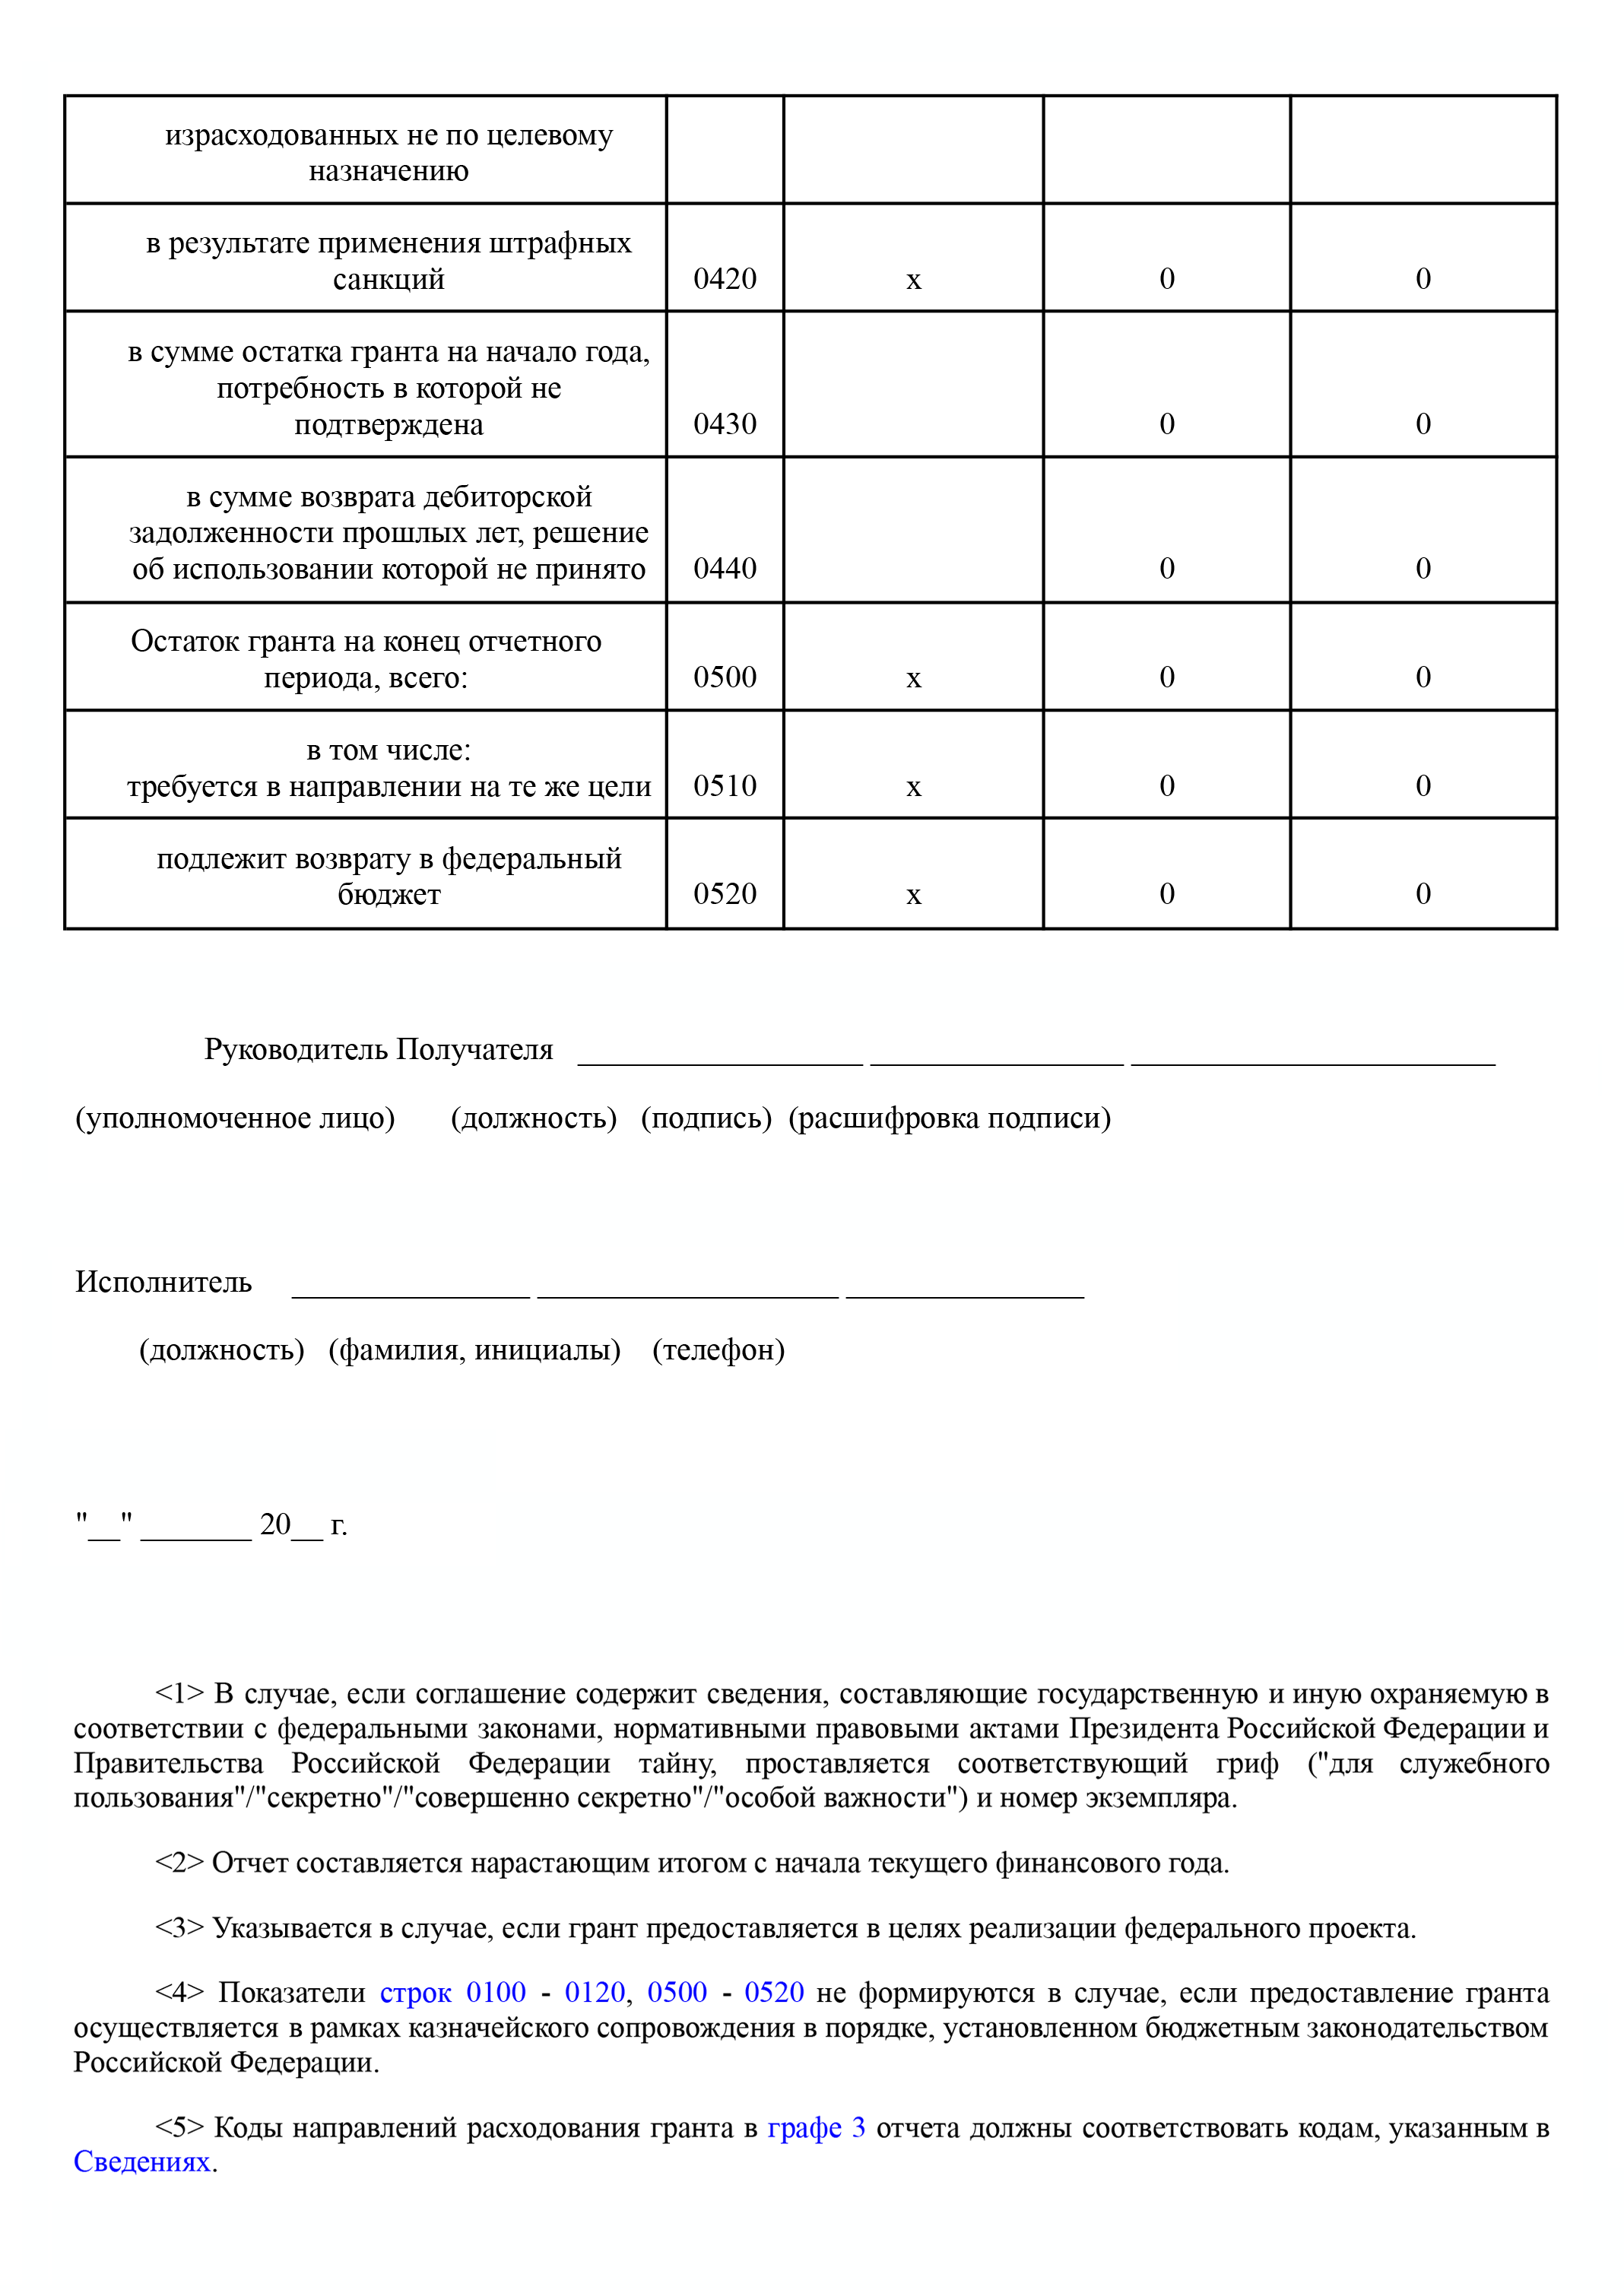 Так выглядит отчет об использовании гранта. Минпром Нижегородской области сделал документ с подсказками по его заполнению — вот он